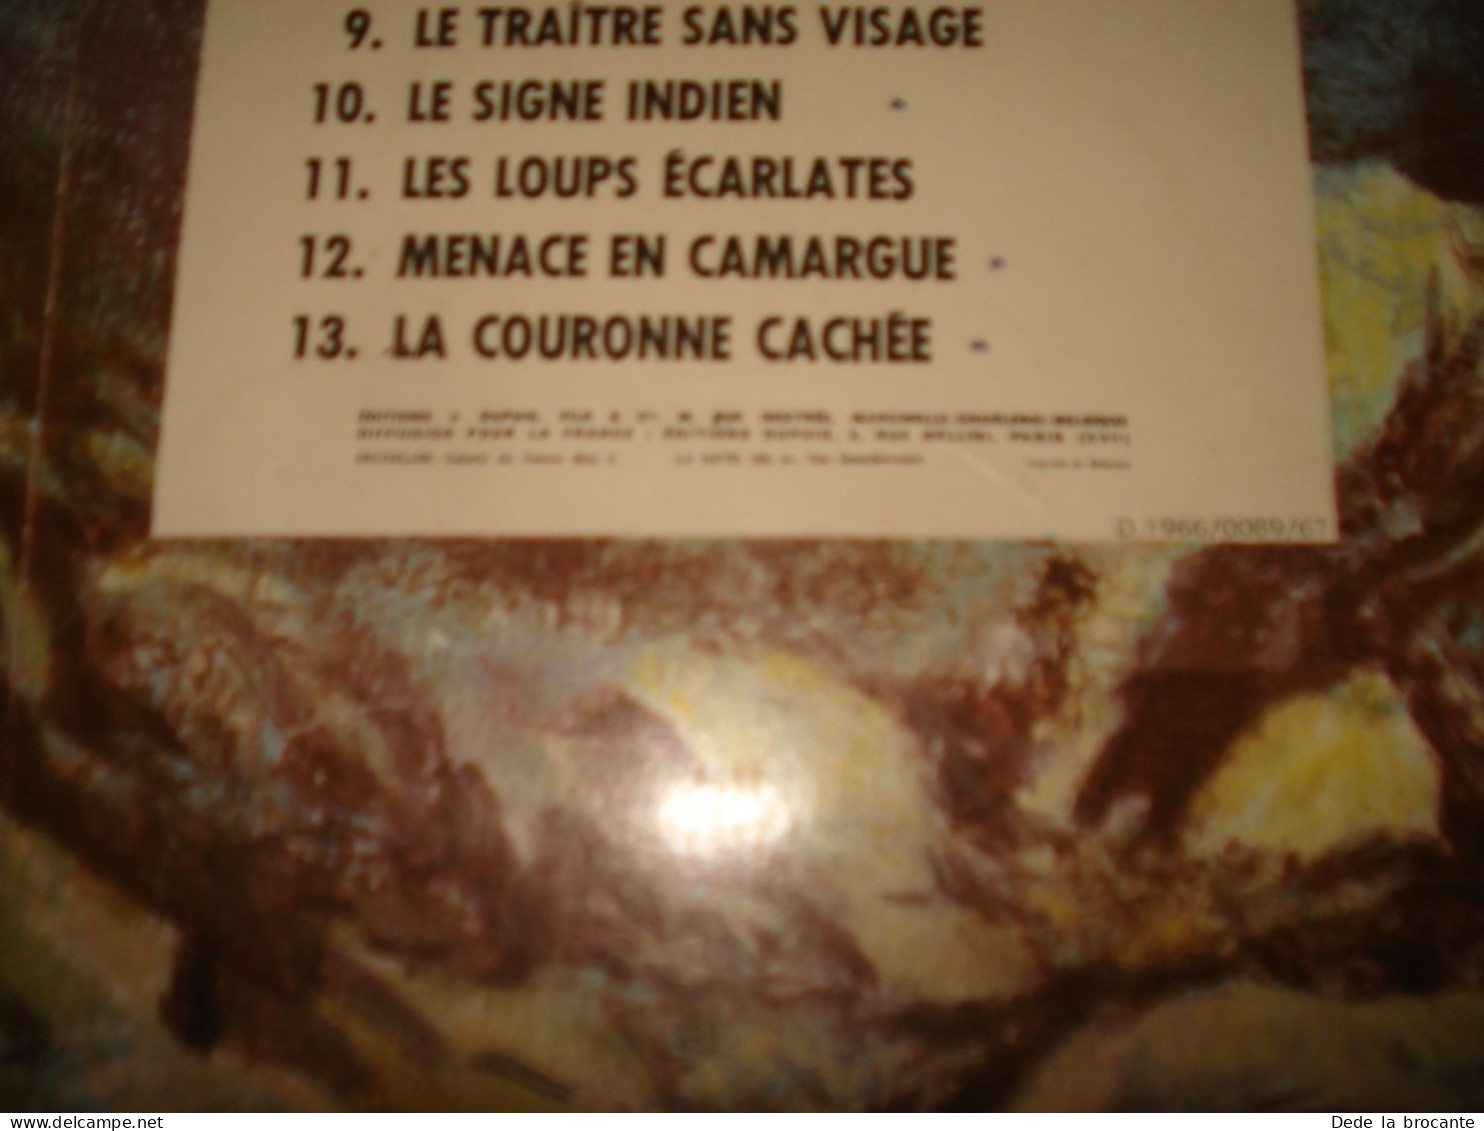 C54 (2) / Patrouille des castors 14 " Le chaudron du diable " E.O de 1966